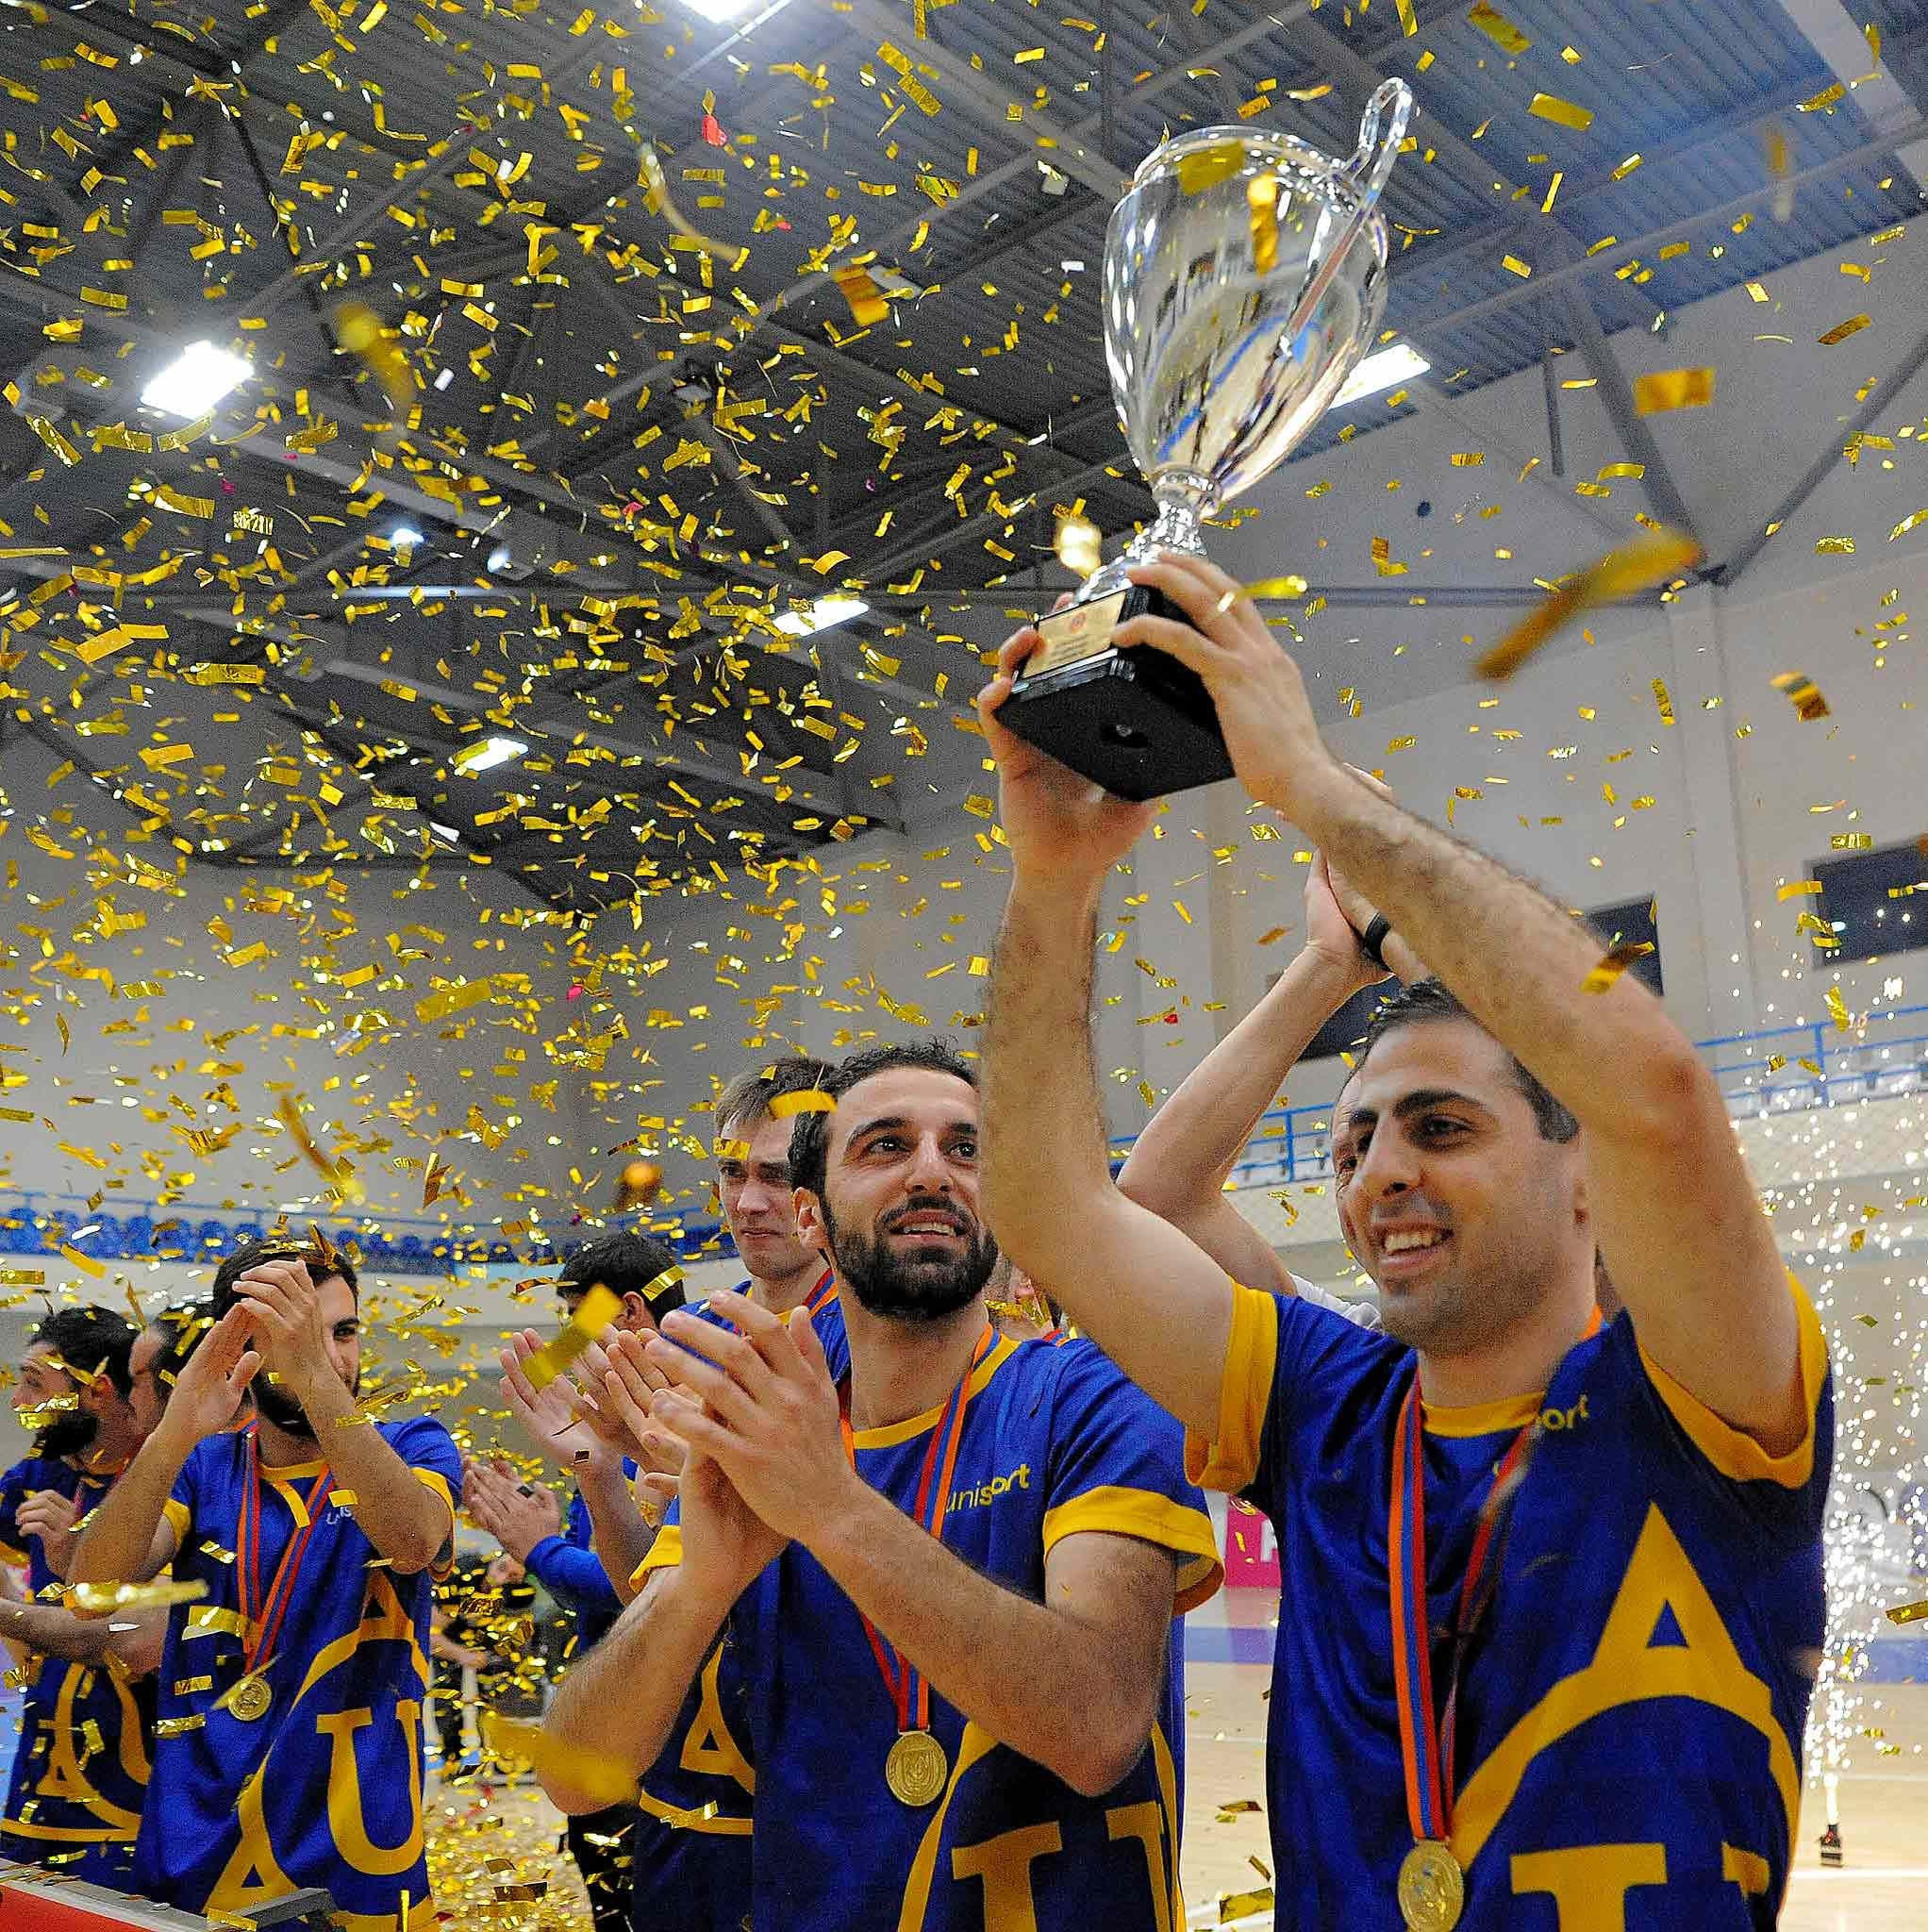 Յունիսպորտը հաղթեց ֆուտզալի Հայաստանի Առաջին խմբի առաջնությունում